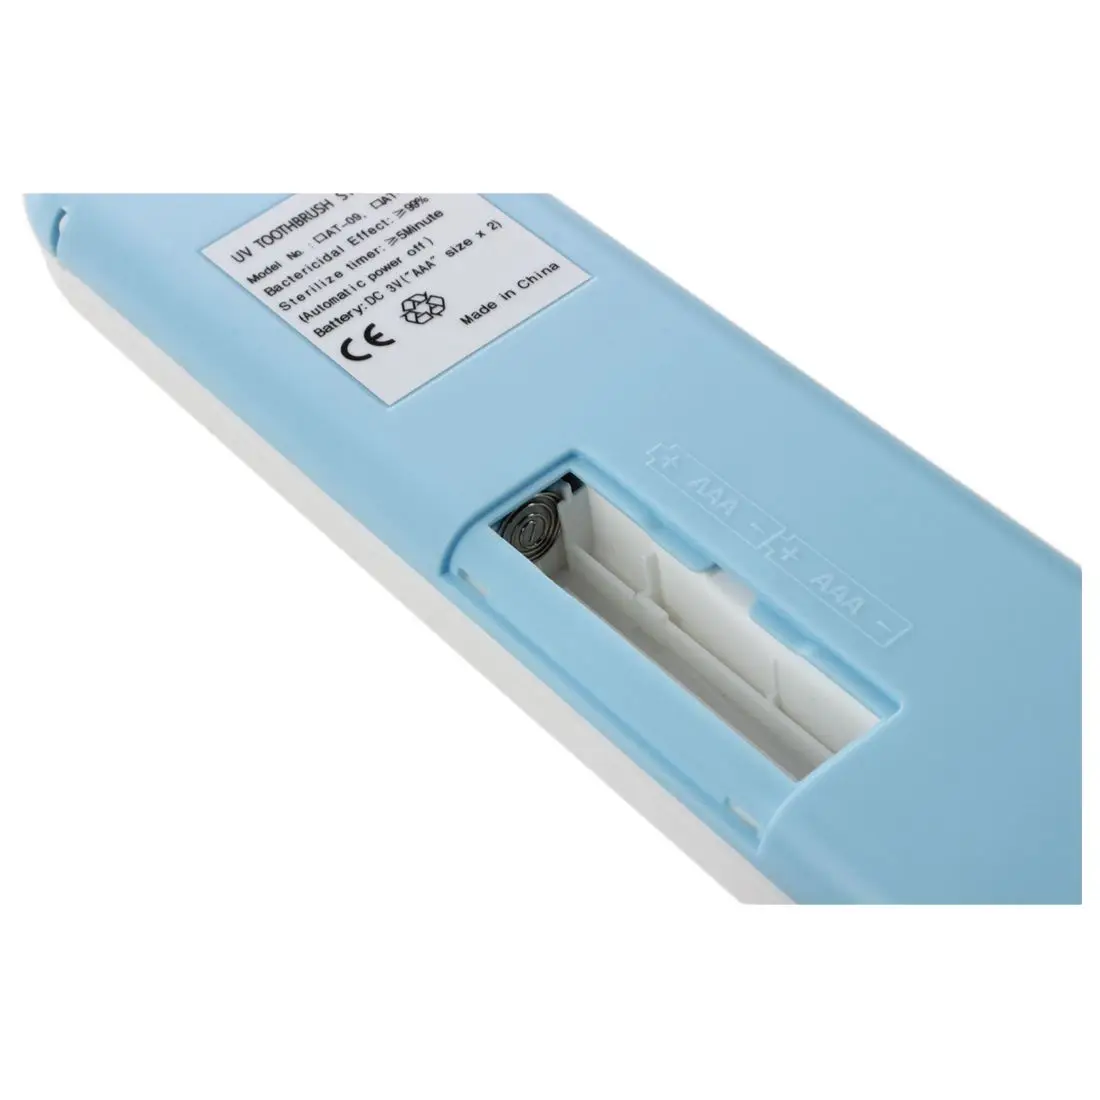 HHFF УФ светильник стерилизатор зубной щетки держатель зубной щетки(серый